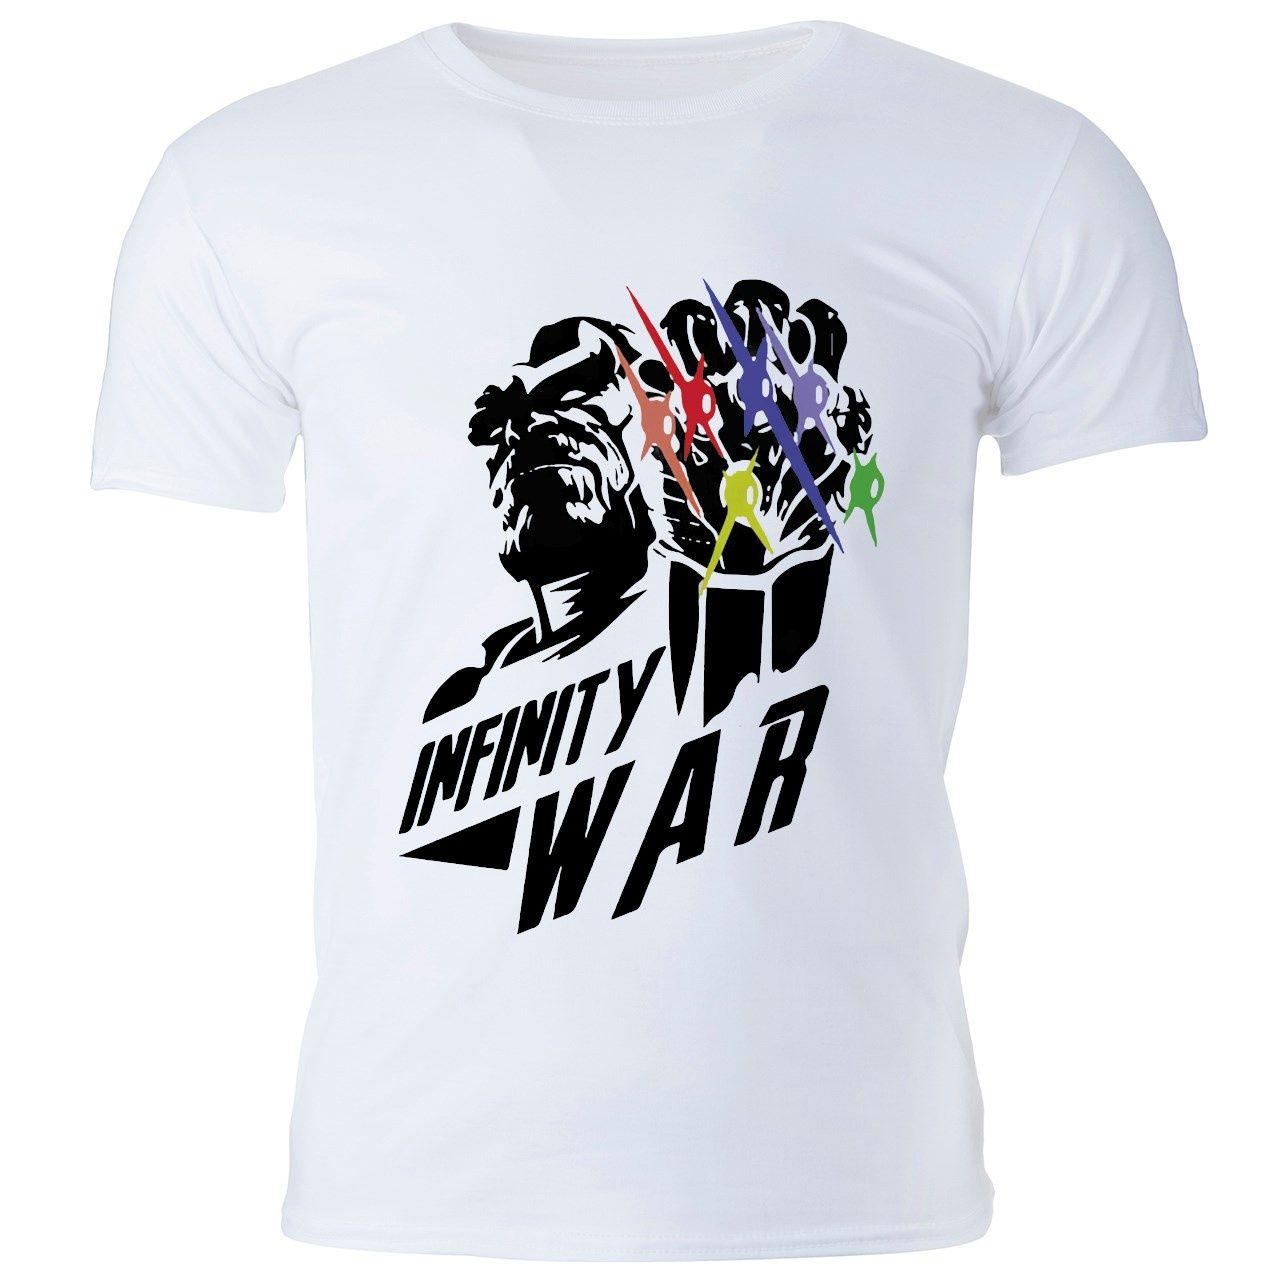 تی شرت مردانه گالری واو طرح Superhero Infinity War کد CT10251 -  - 1